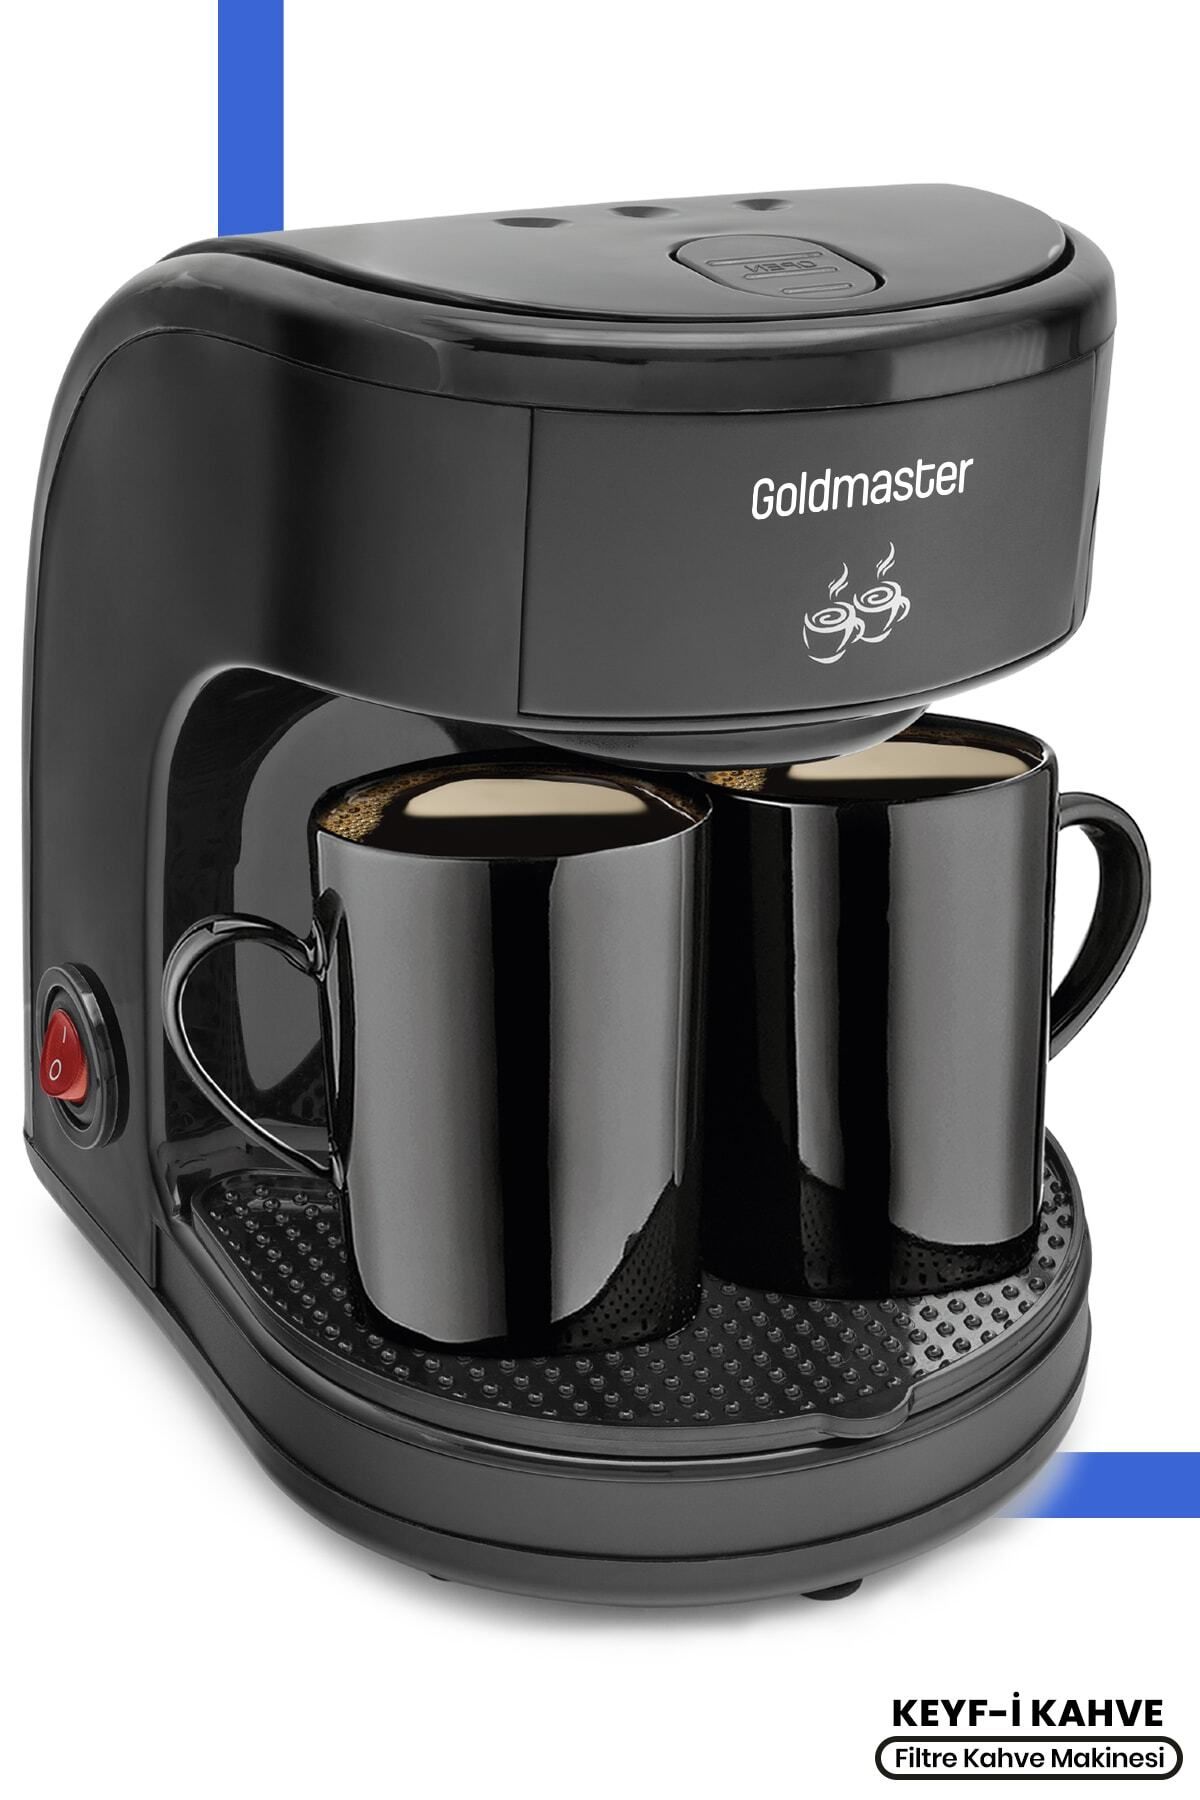 GoldMaster Keyf-i Kahve Yıkanabilir Ve Temizlenebilir Filtreli Çift Kupalı Filtre Kahve Makinesi